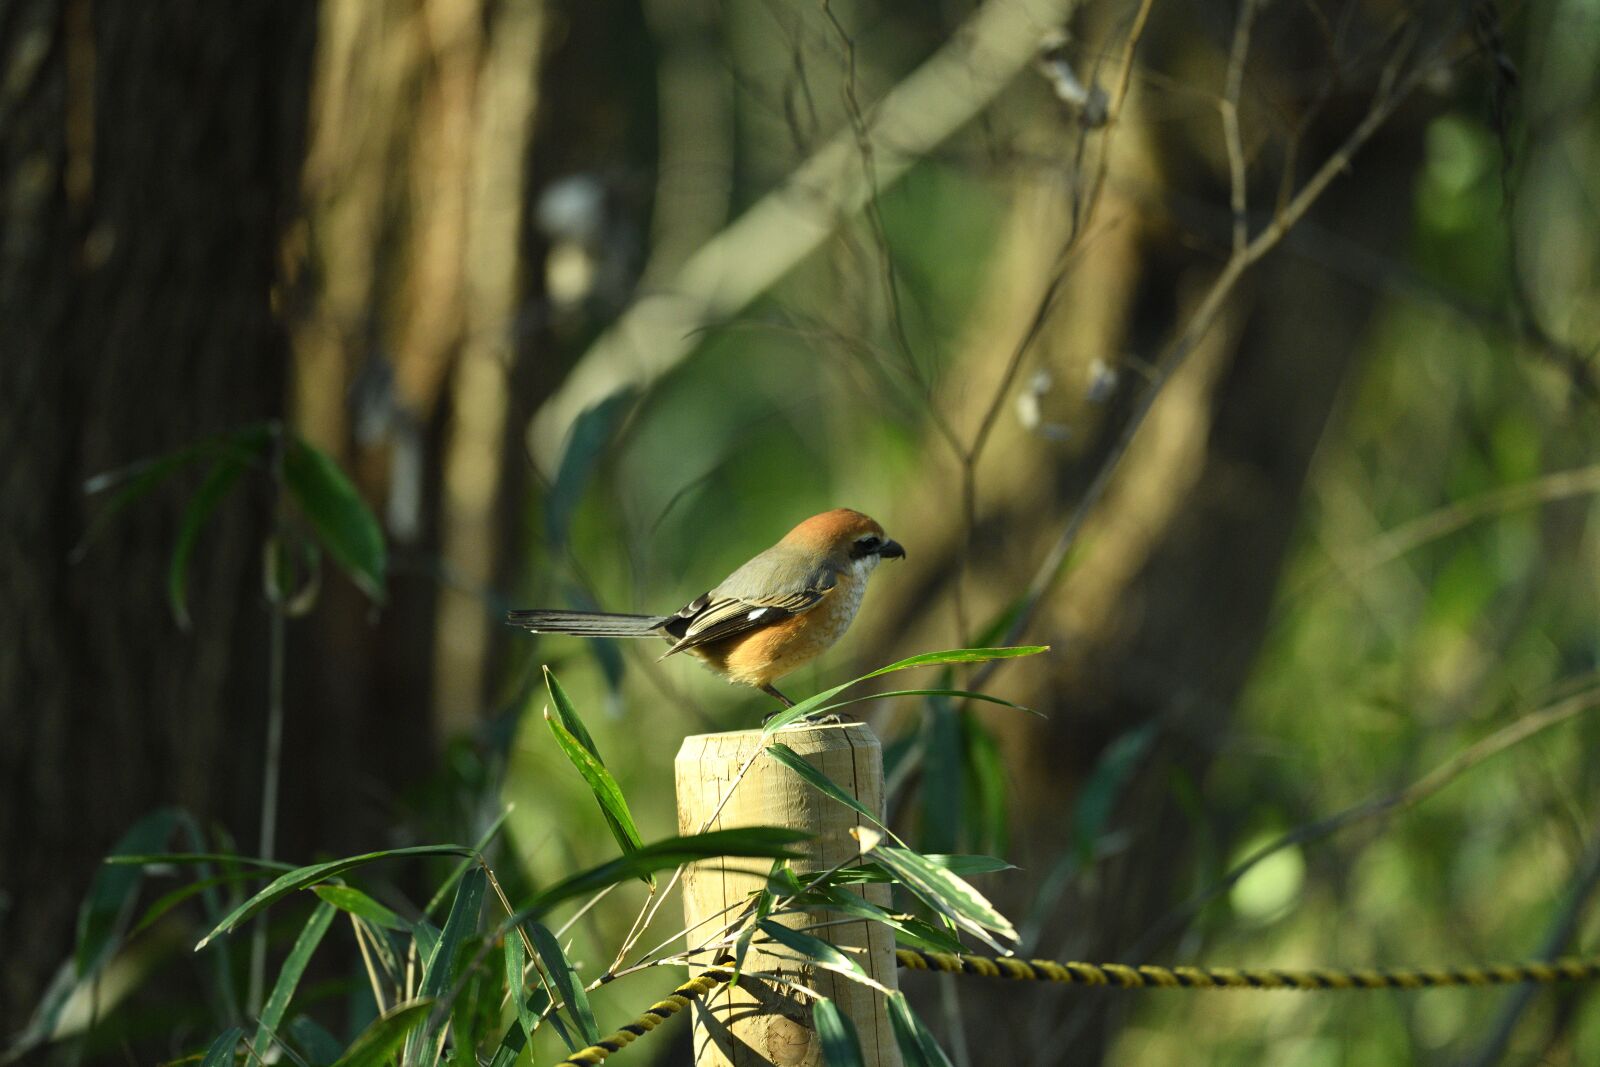 Nikon D850 sample photo. Bird, small bird, nature photography